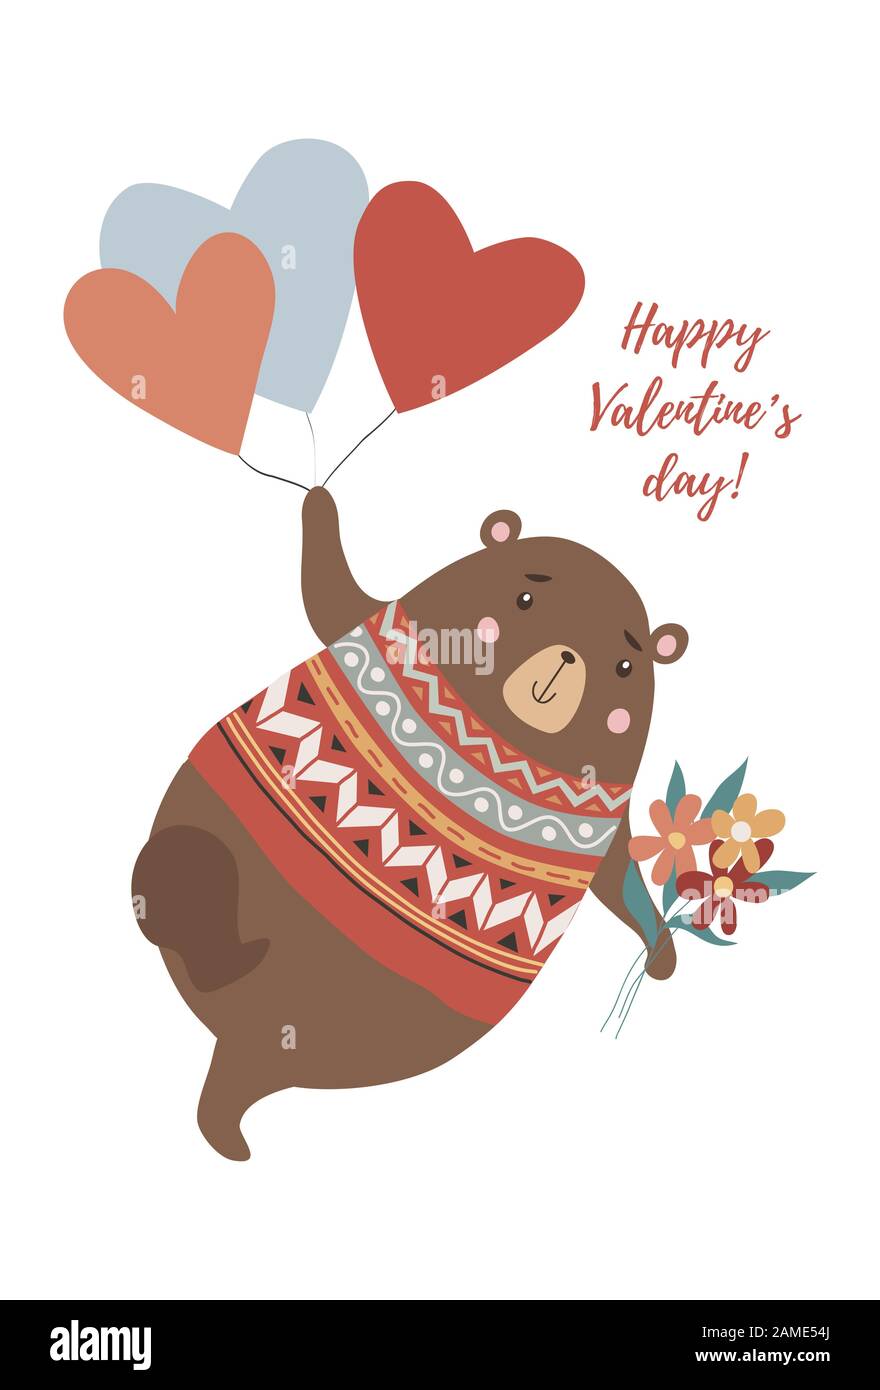 Grazioso orso con bouquet di fiori che volano sul cuore a forma di palloncini in stile disegnato a mano Illustrazione Vettoriale